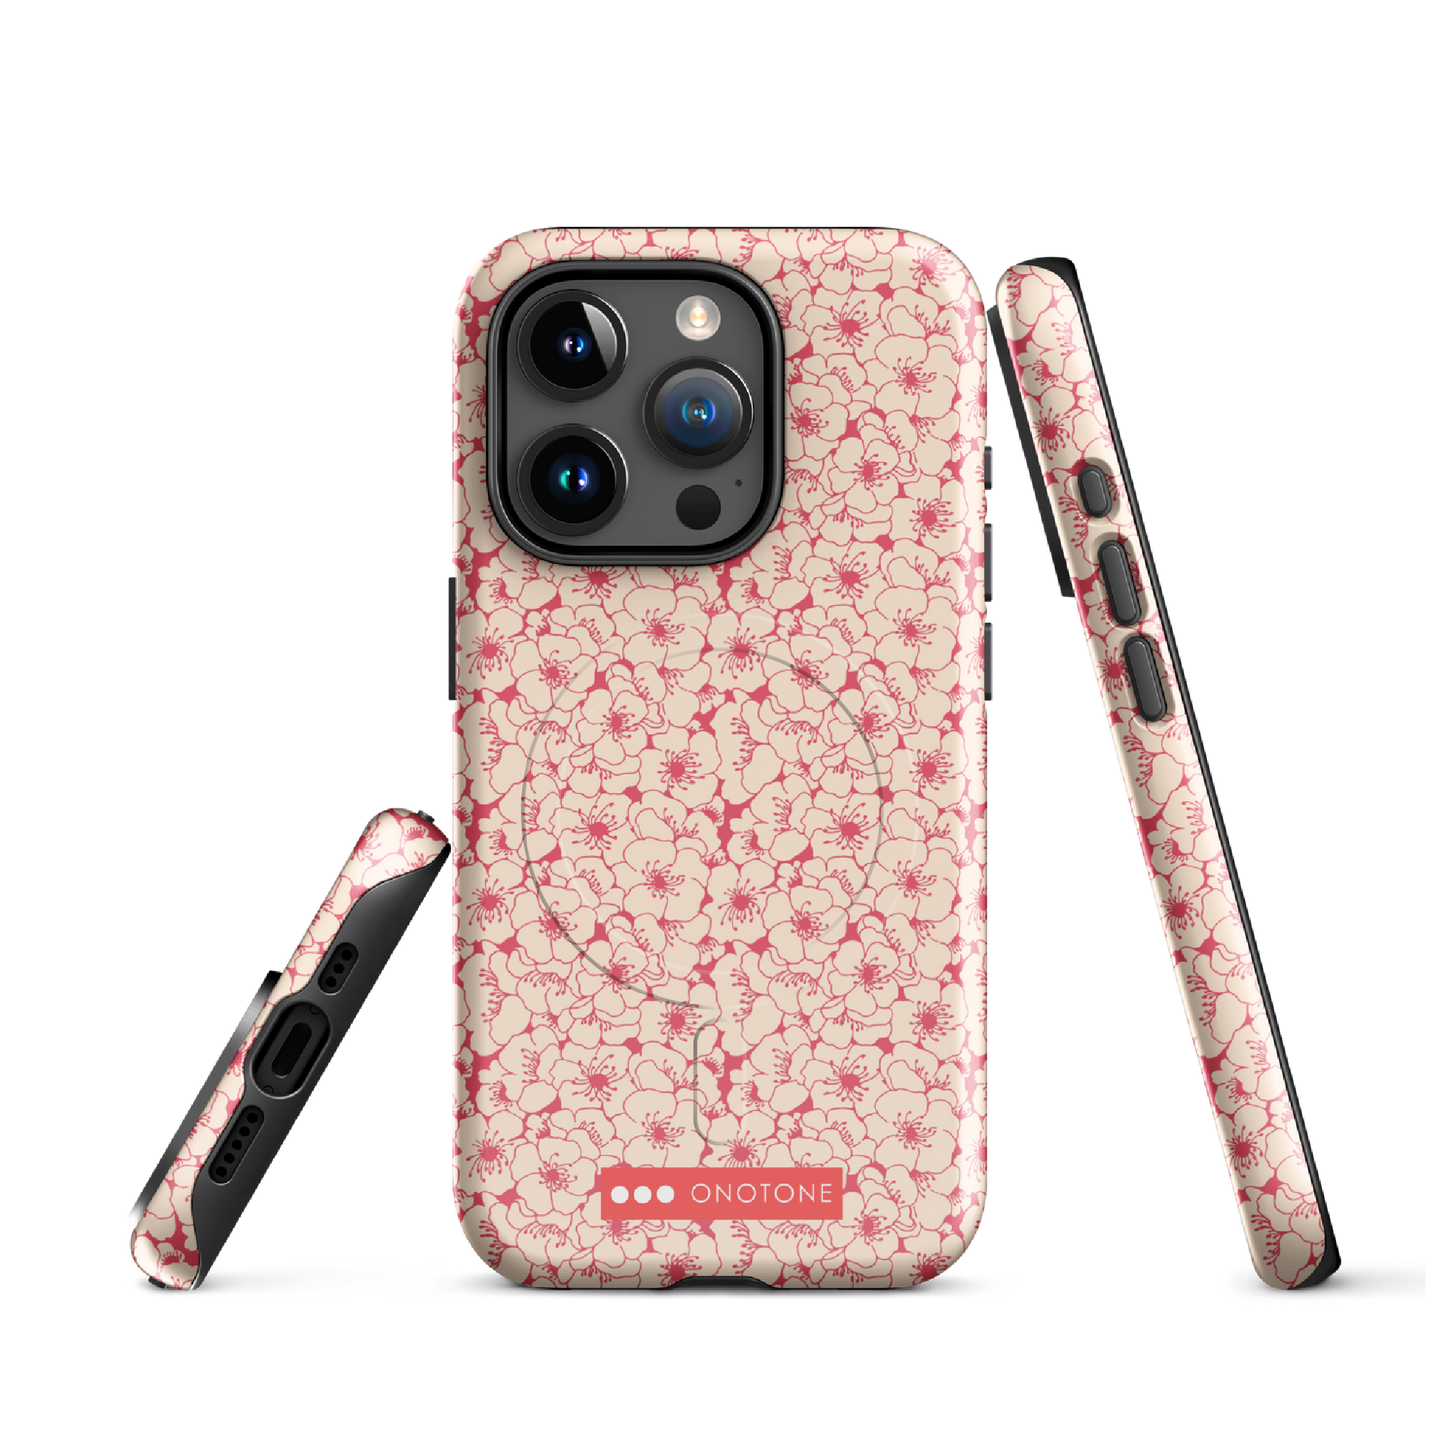 Japanese design indigo iPhone® Case with sakura patterns